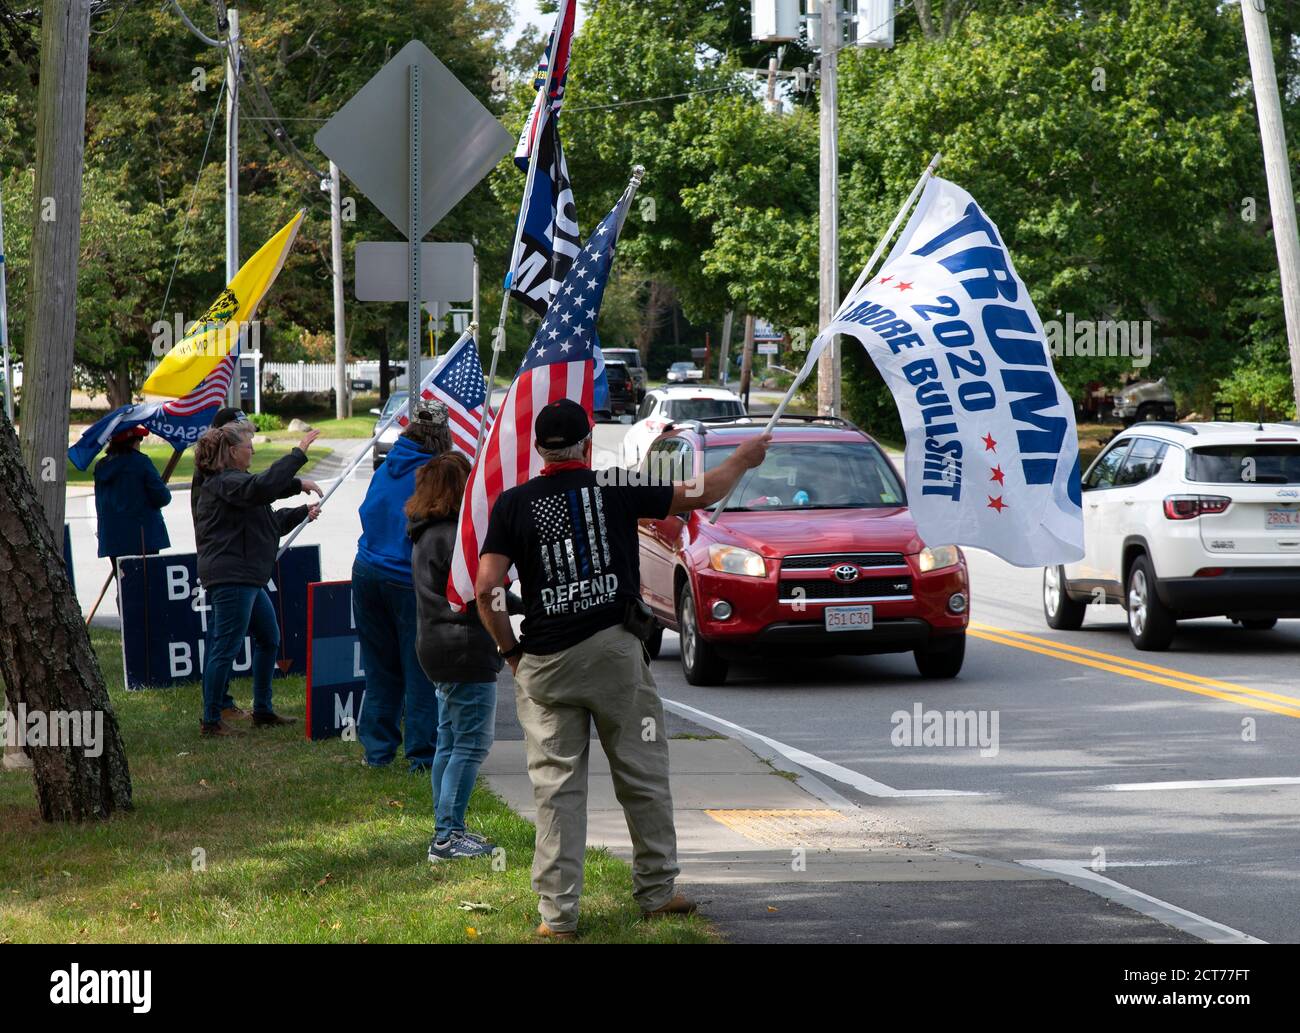 Rallye routier pour la réélection de Donald Trump à la présidence des États-Unis. Brewster, Massachusetts, on Cape Cod, États-Unis Banque D'Images